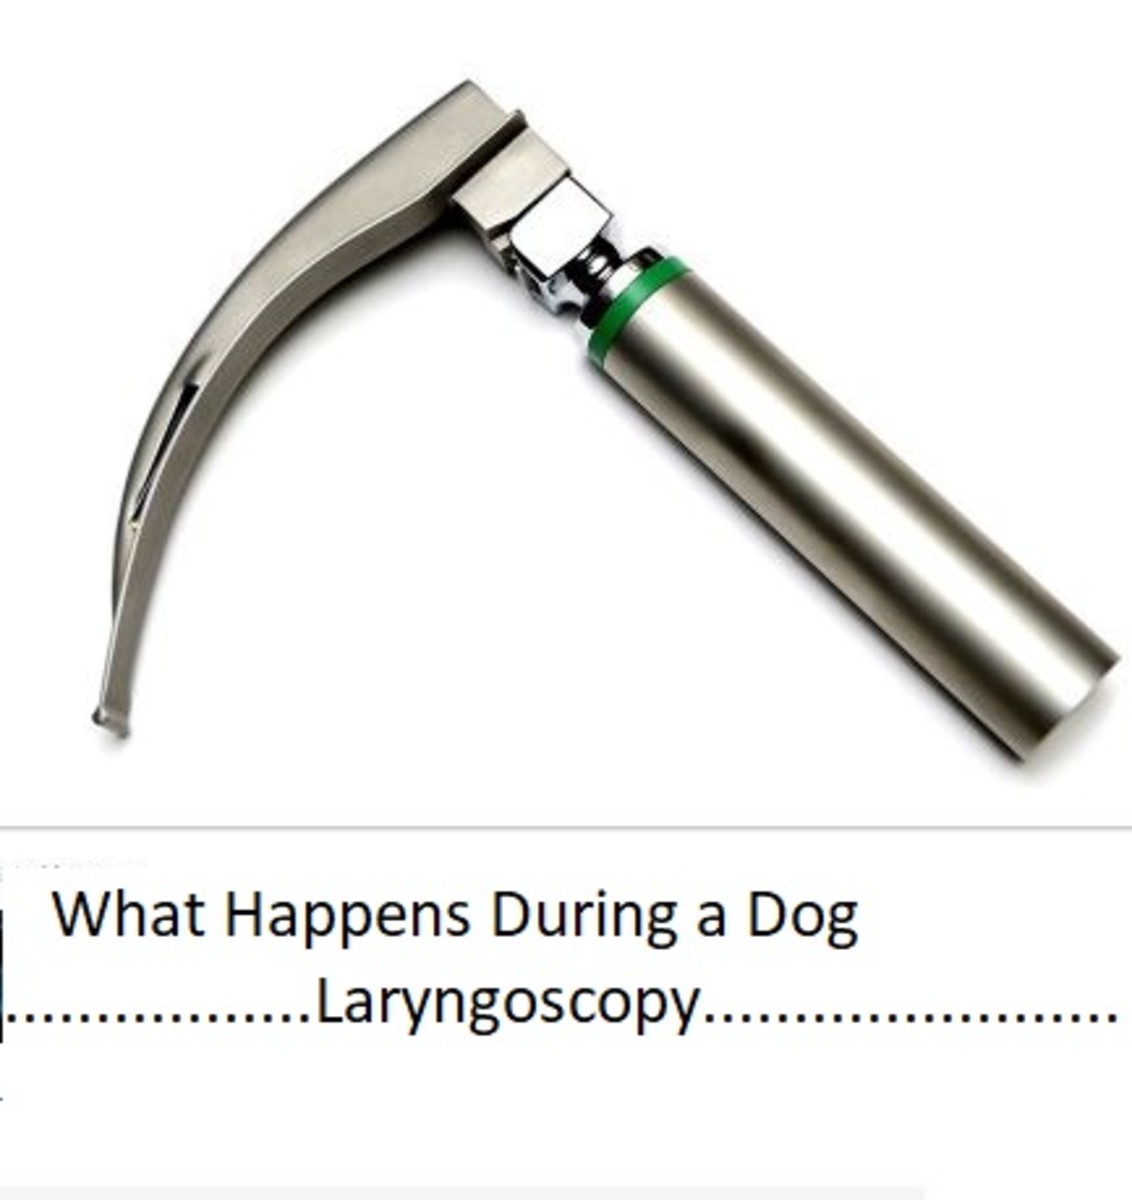  Picture of laryngoscope